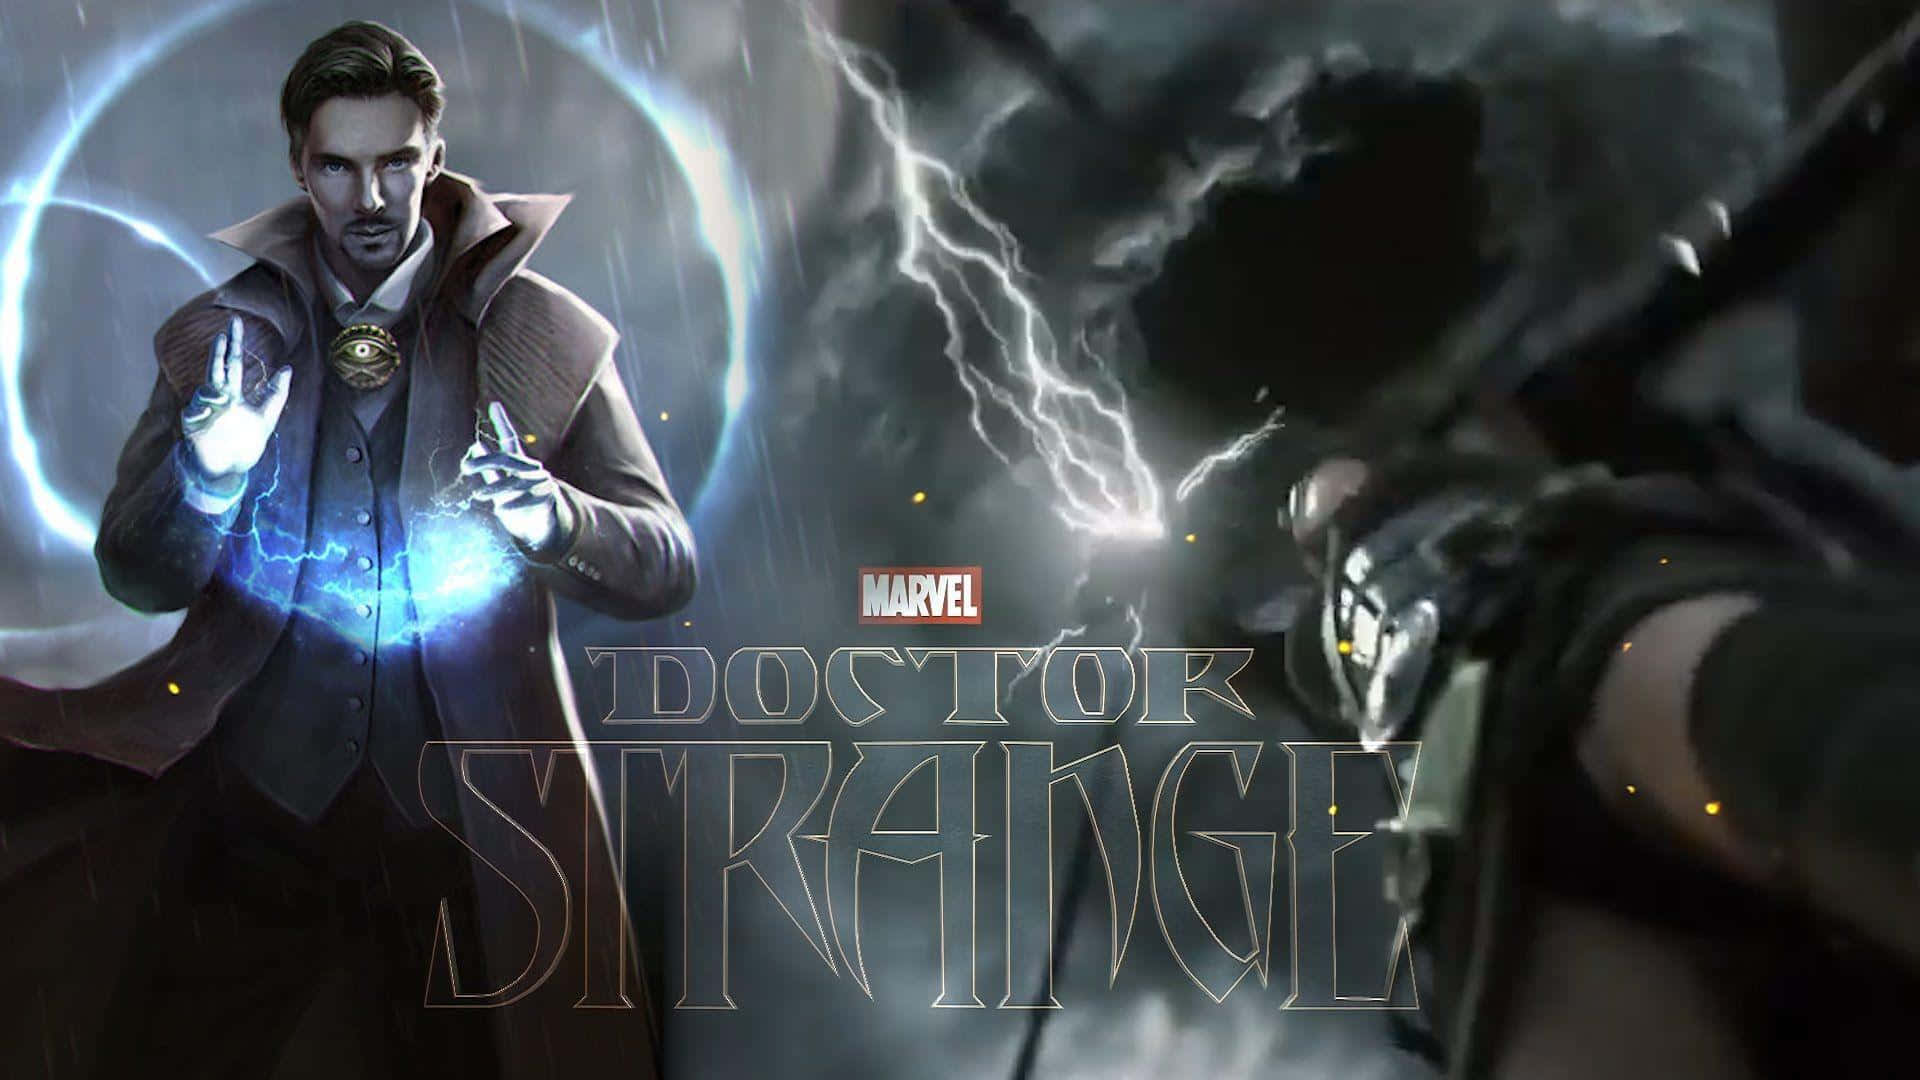 "A Conjurer of Magic: Dr. Strange"